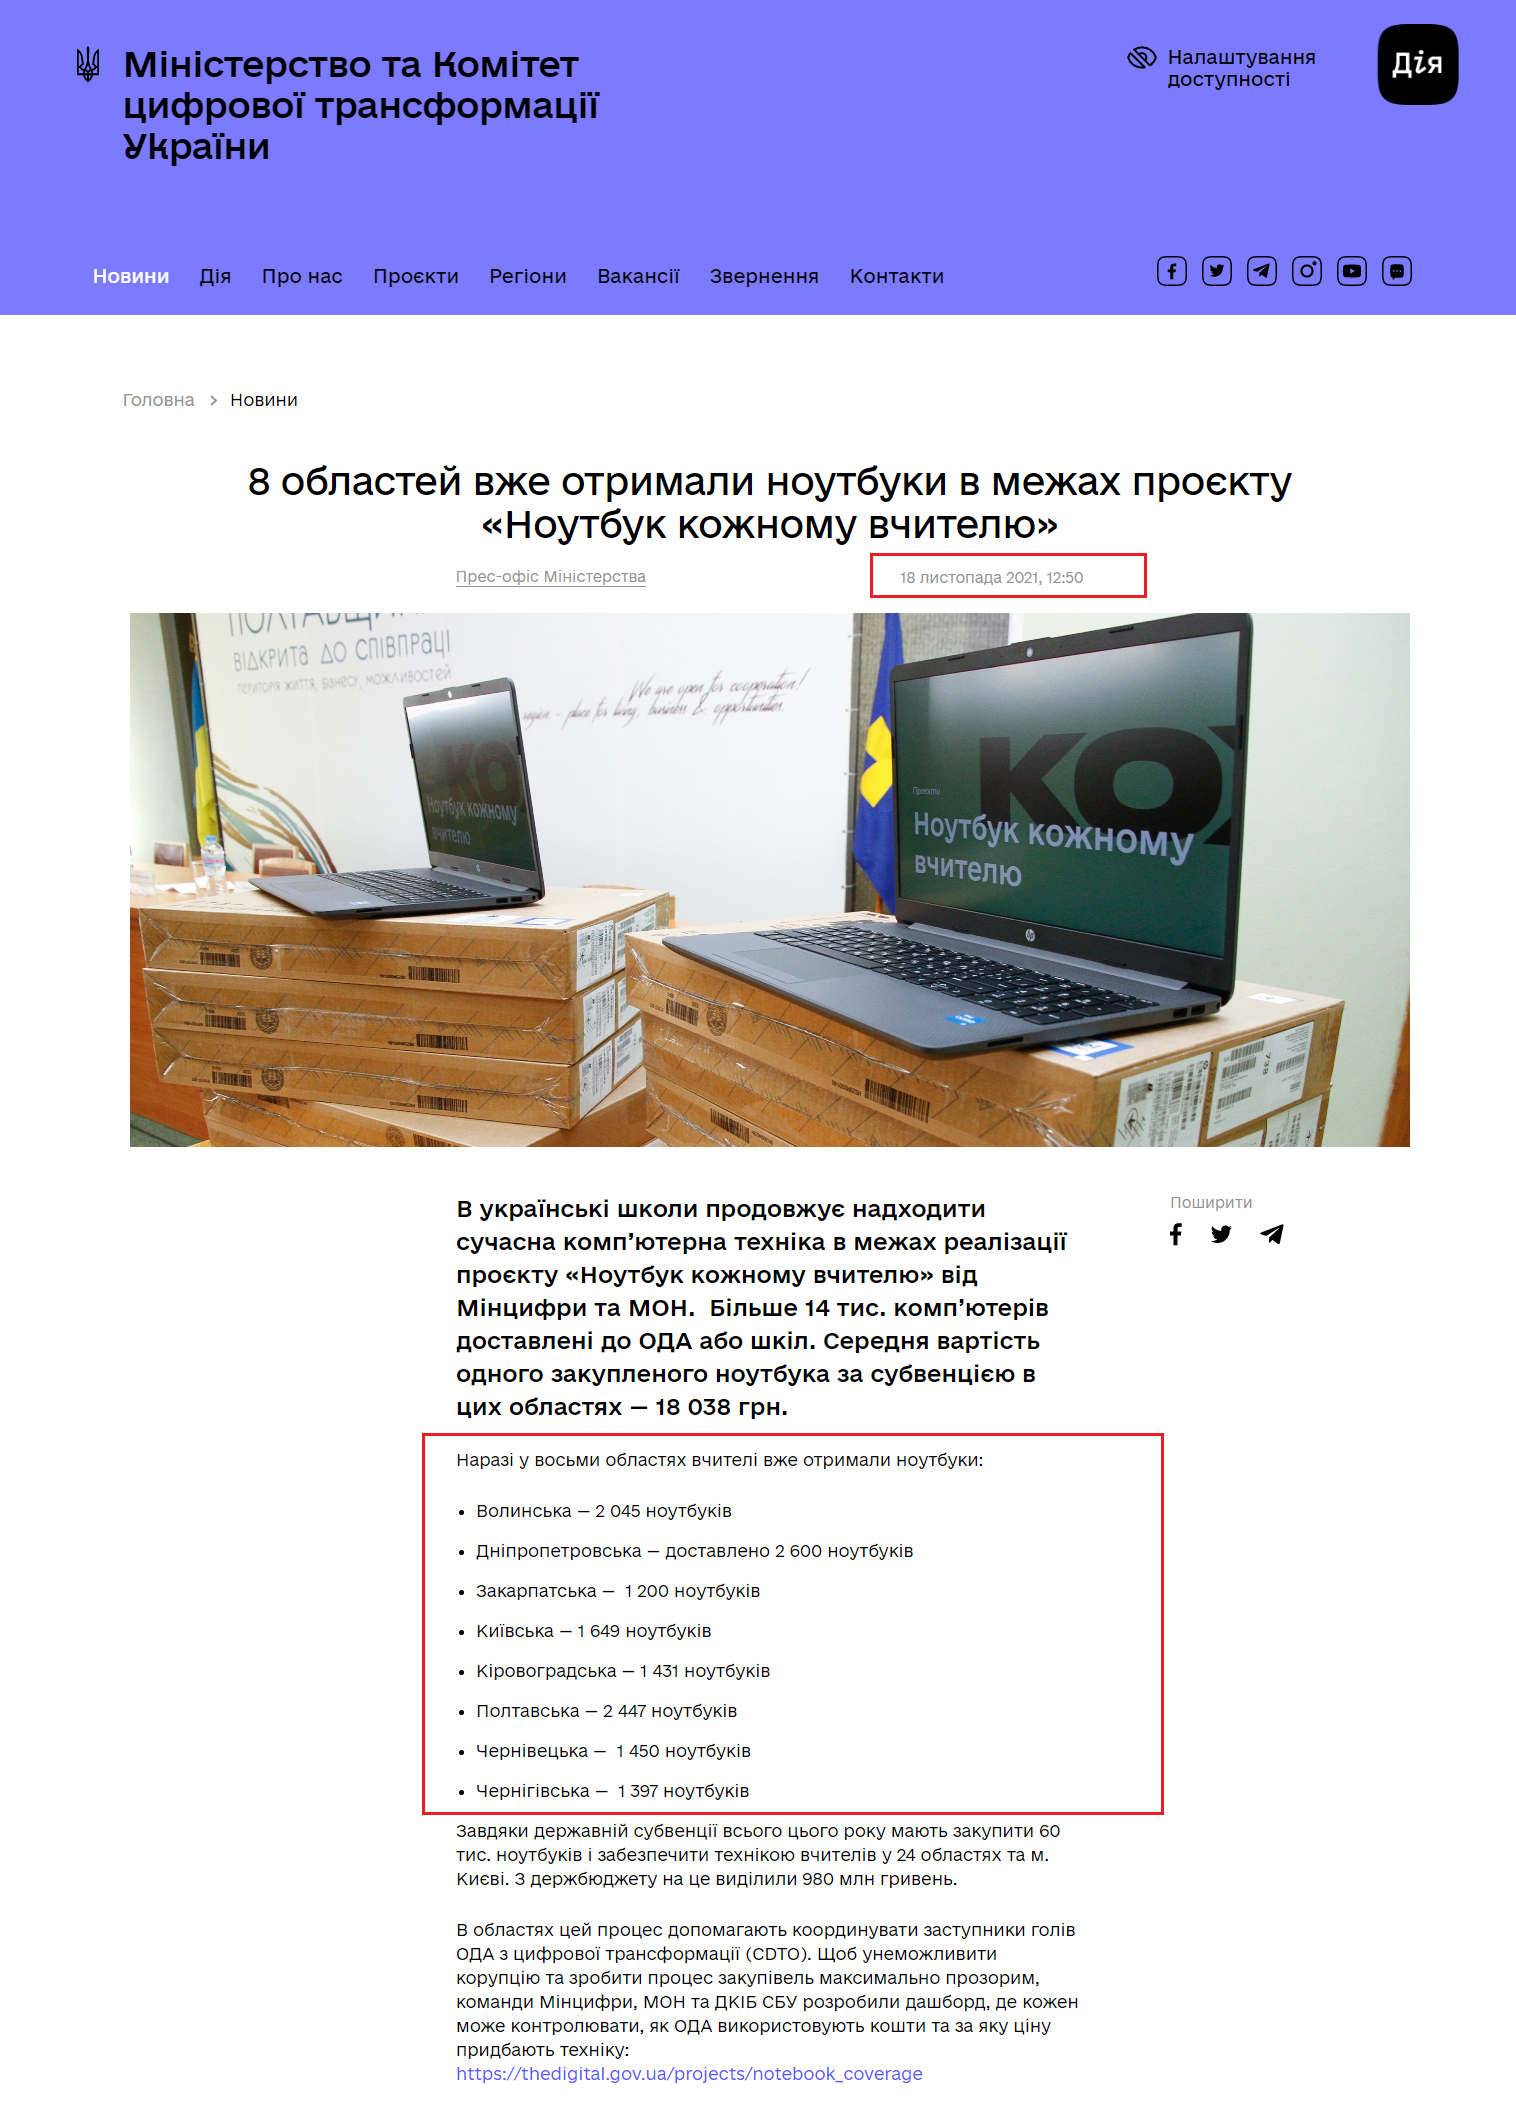 https://thedigital.gov.ua/news/8-oblastey-vzhe-otrimali-noutbuki-v-mezhakh-proektu-noutbuk-kozhnomu-vchitelyu